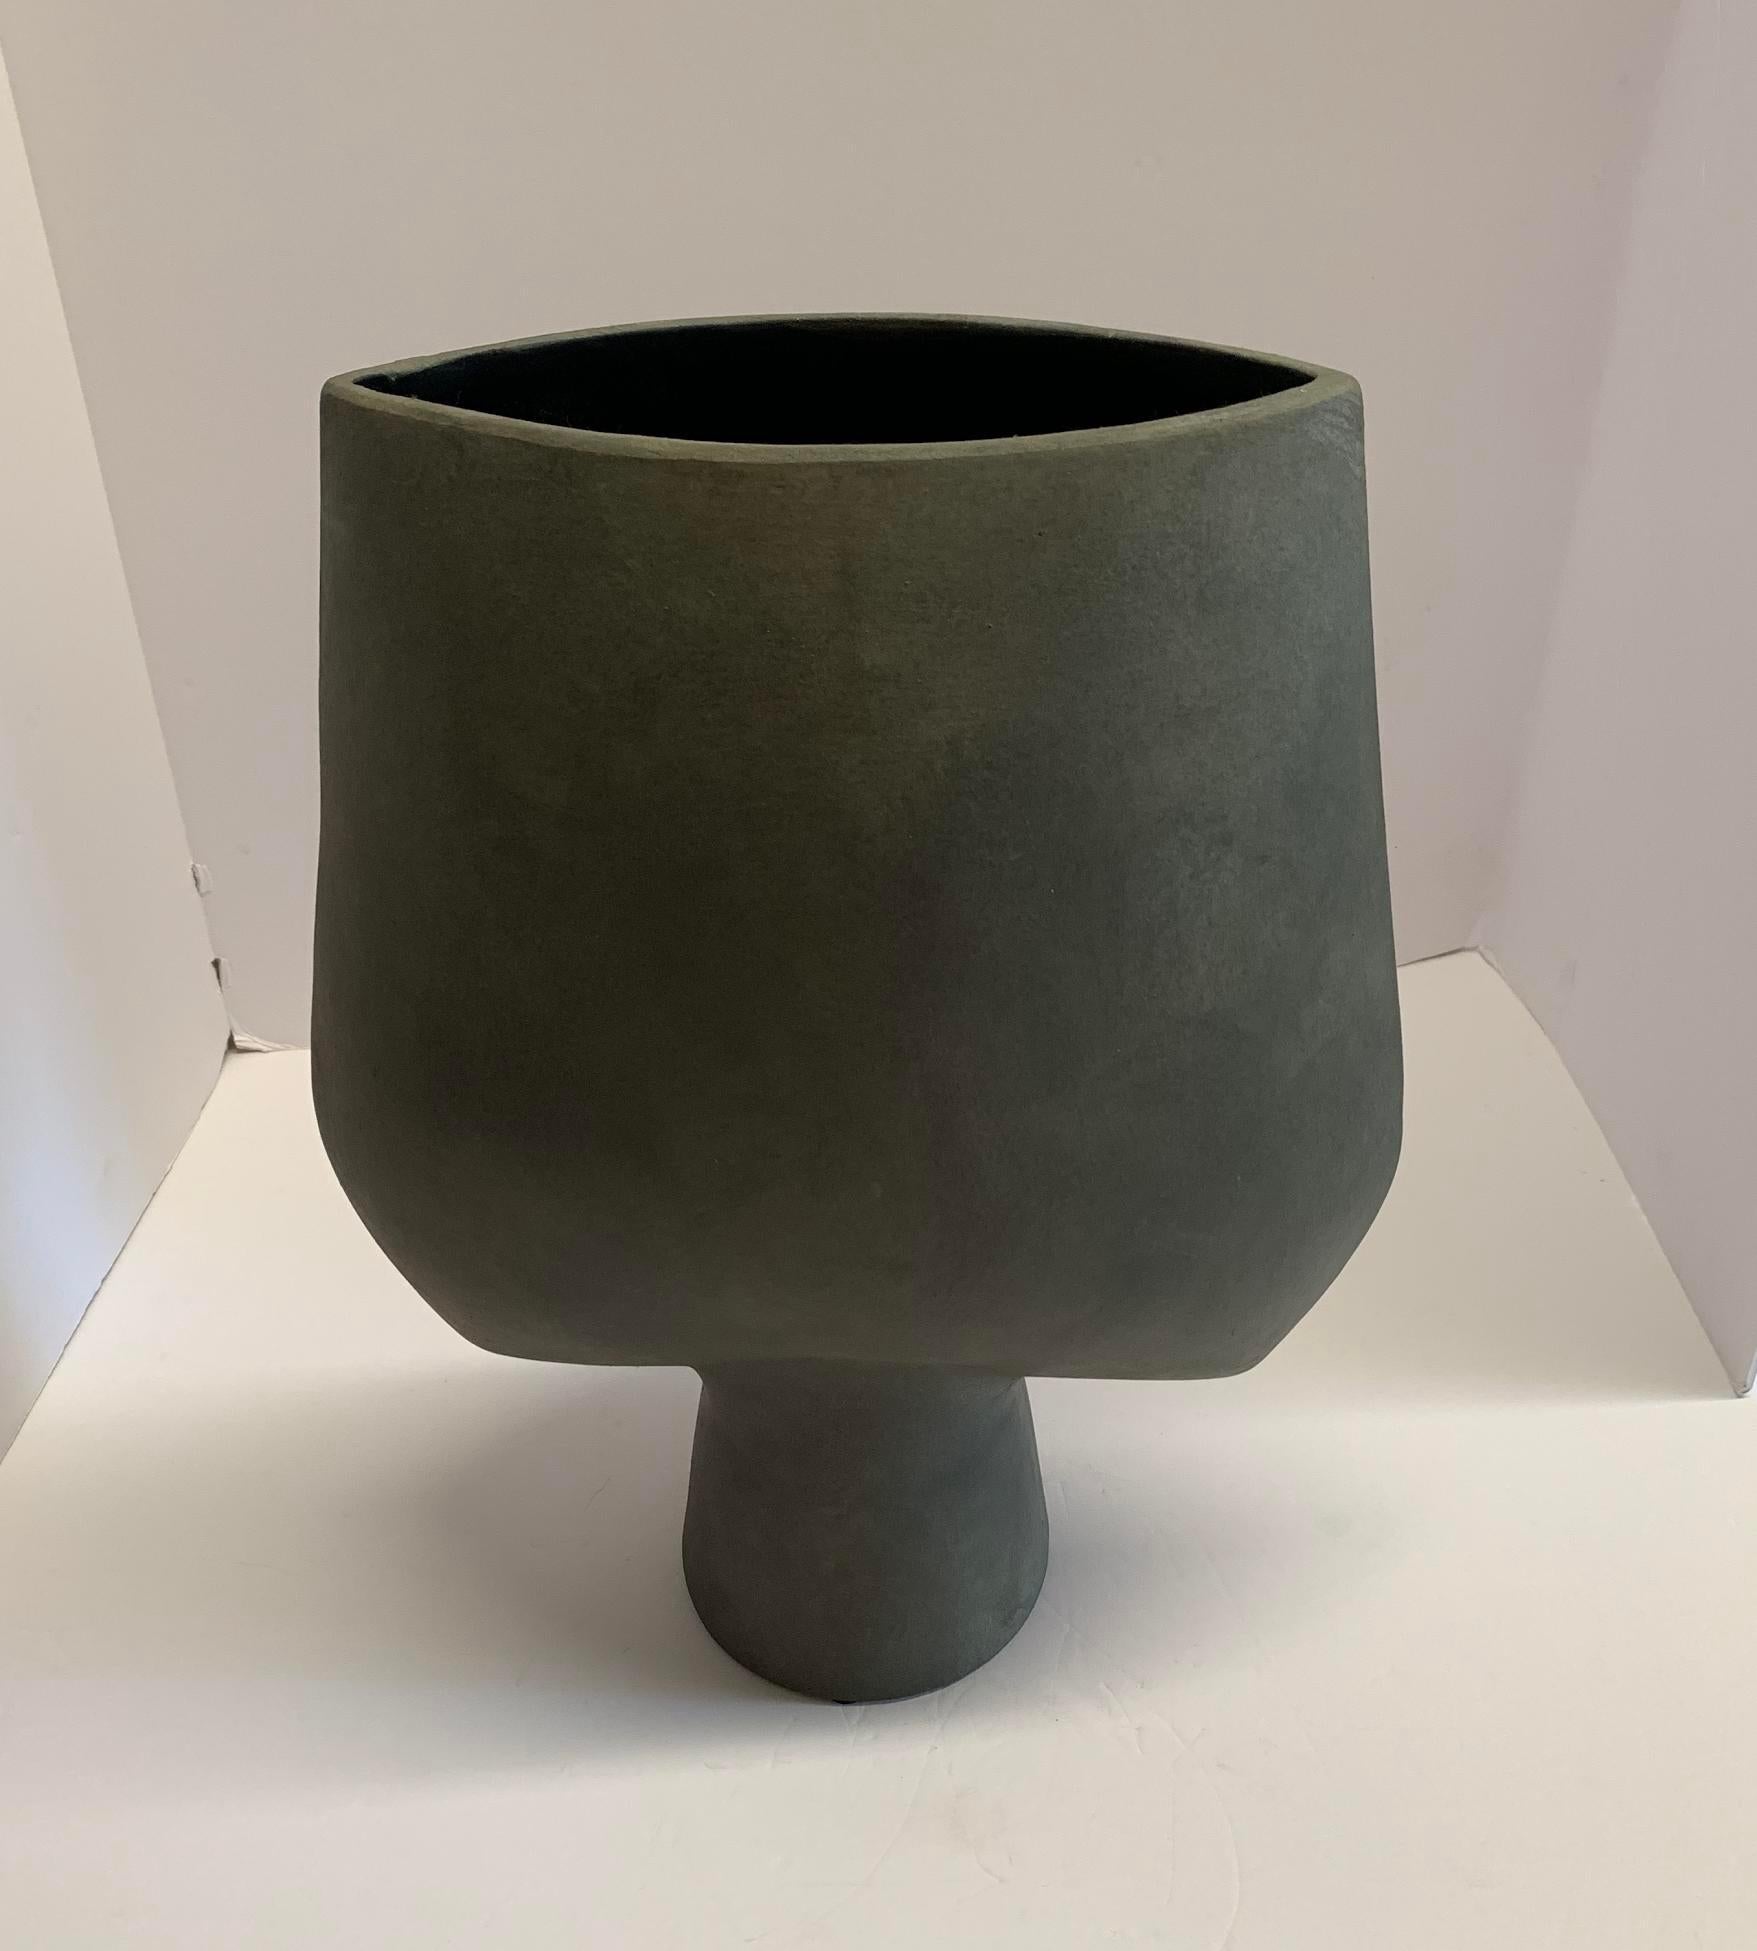 Zeitgenössische dänische Vase aus Keramik in mattem Grau.
Pfeilförmige Platte mit röhrenförmigem Sockel.
Matte graue Glasur.
Einer aus einer Sammlung von vielen Formen und Größen.
Zwei davon sind erhältlich und werden einzeln verkauft.

 